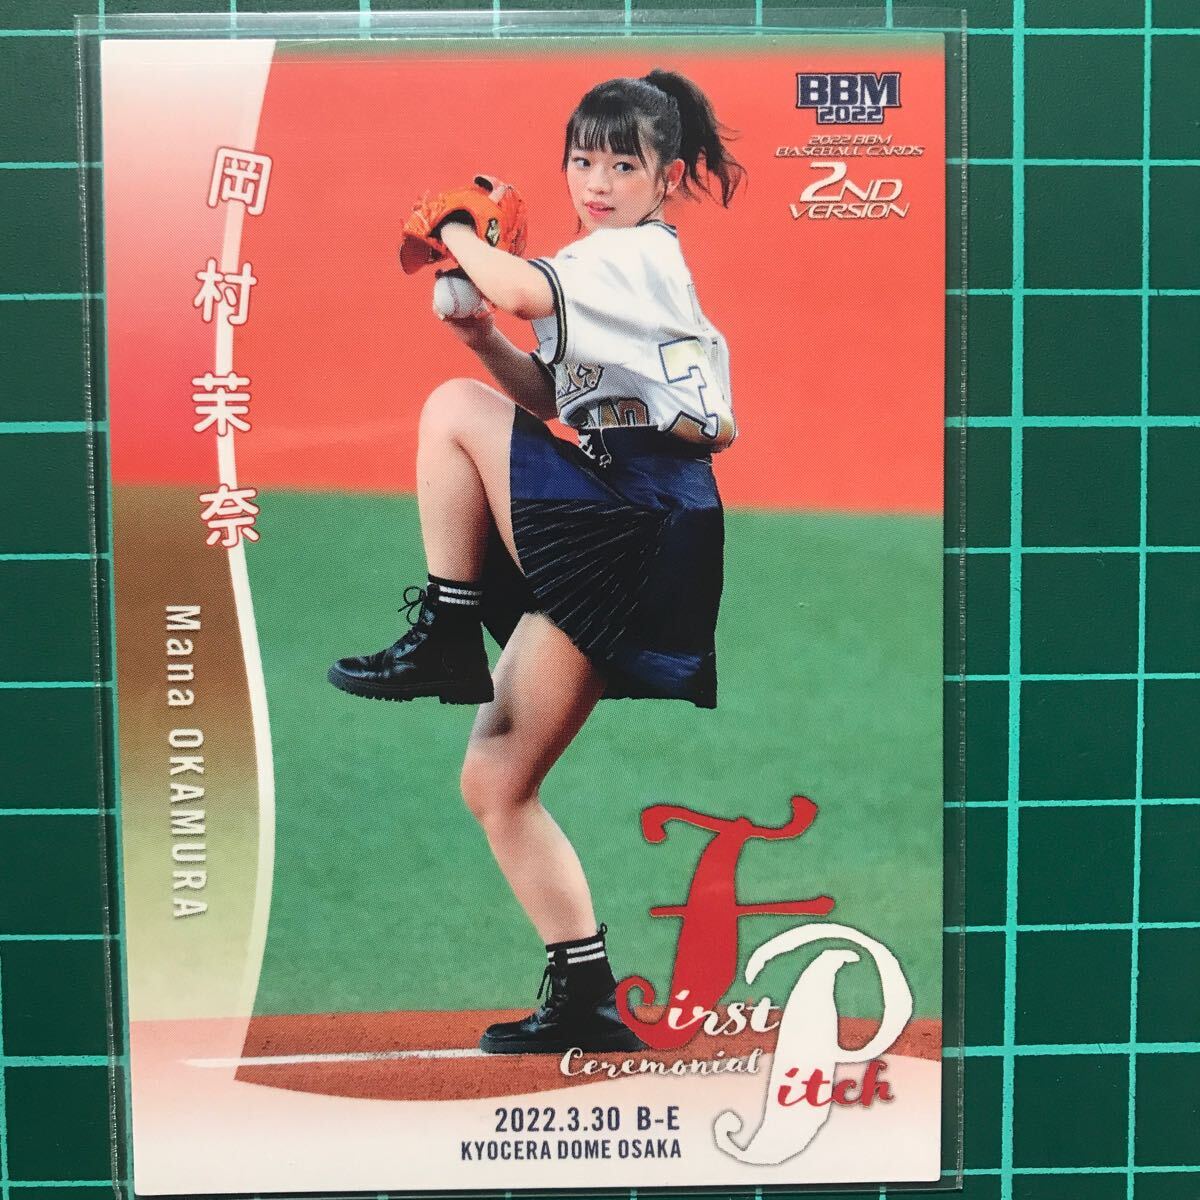 岡村茉奈 始球式カード 2022 BBM 2ndバージョン レギュラーカード ラストアイドルの画像1